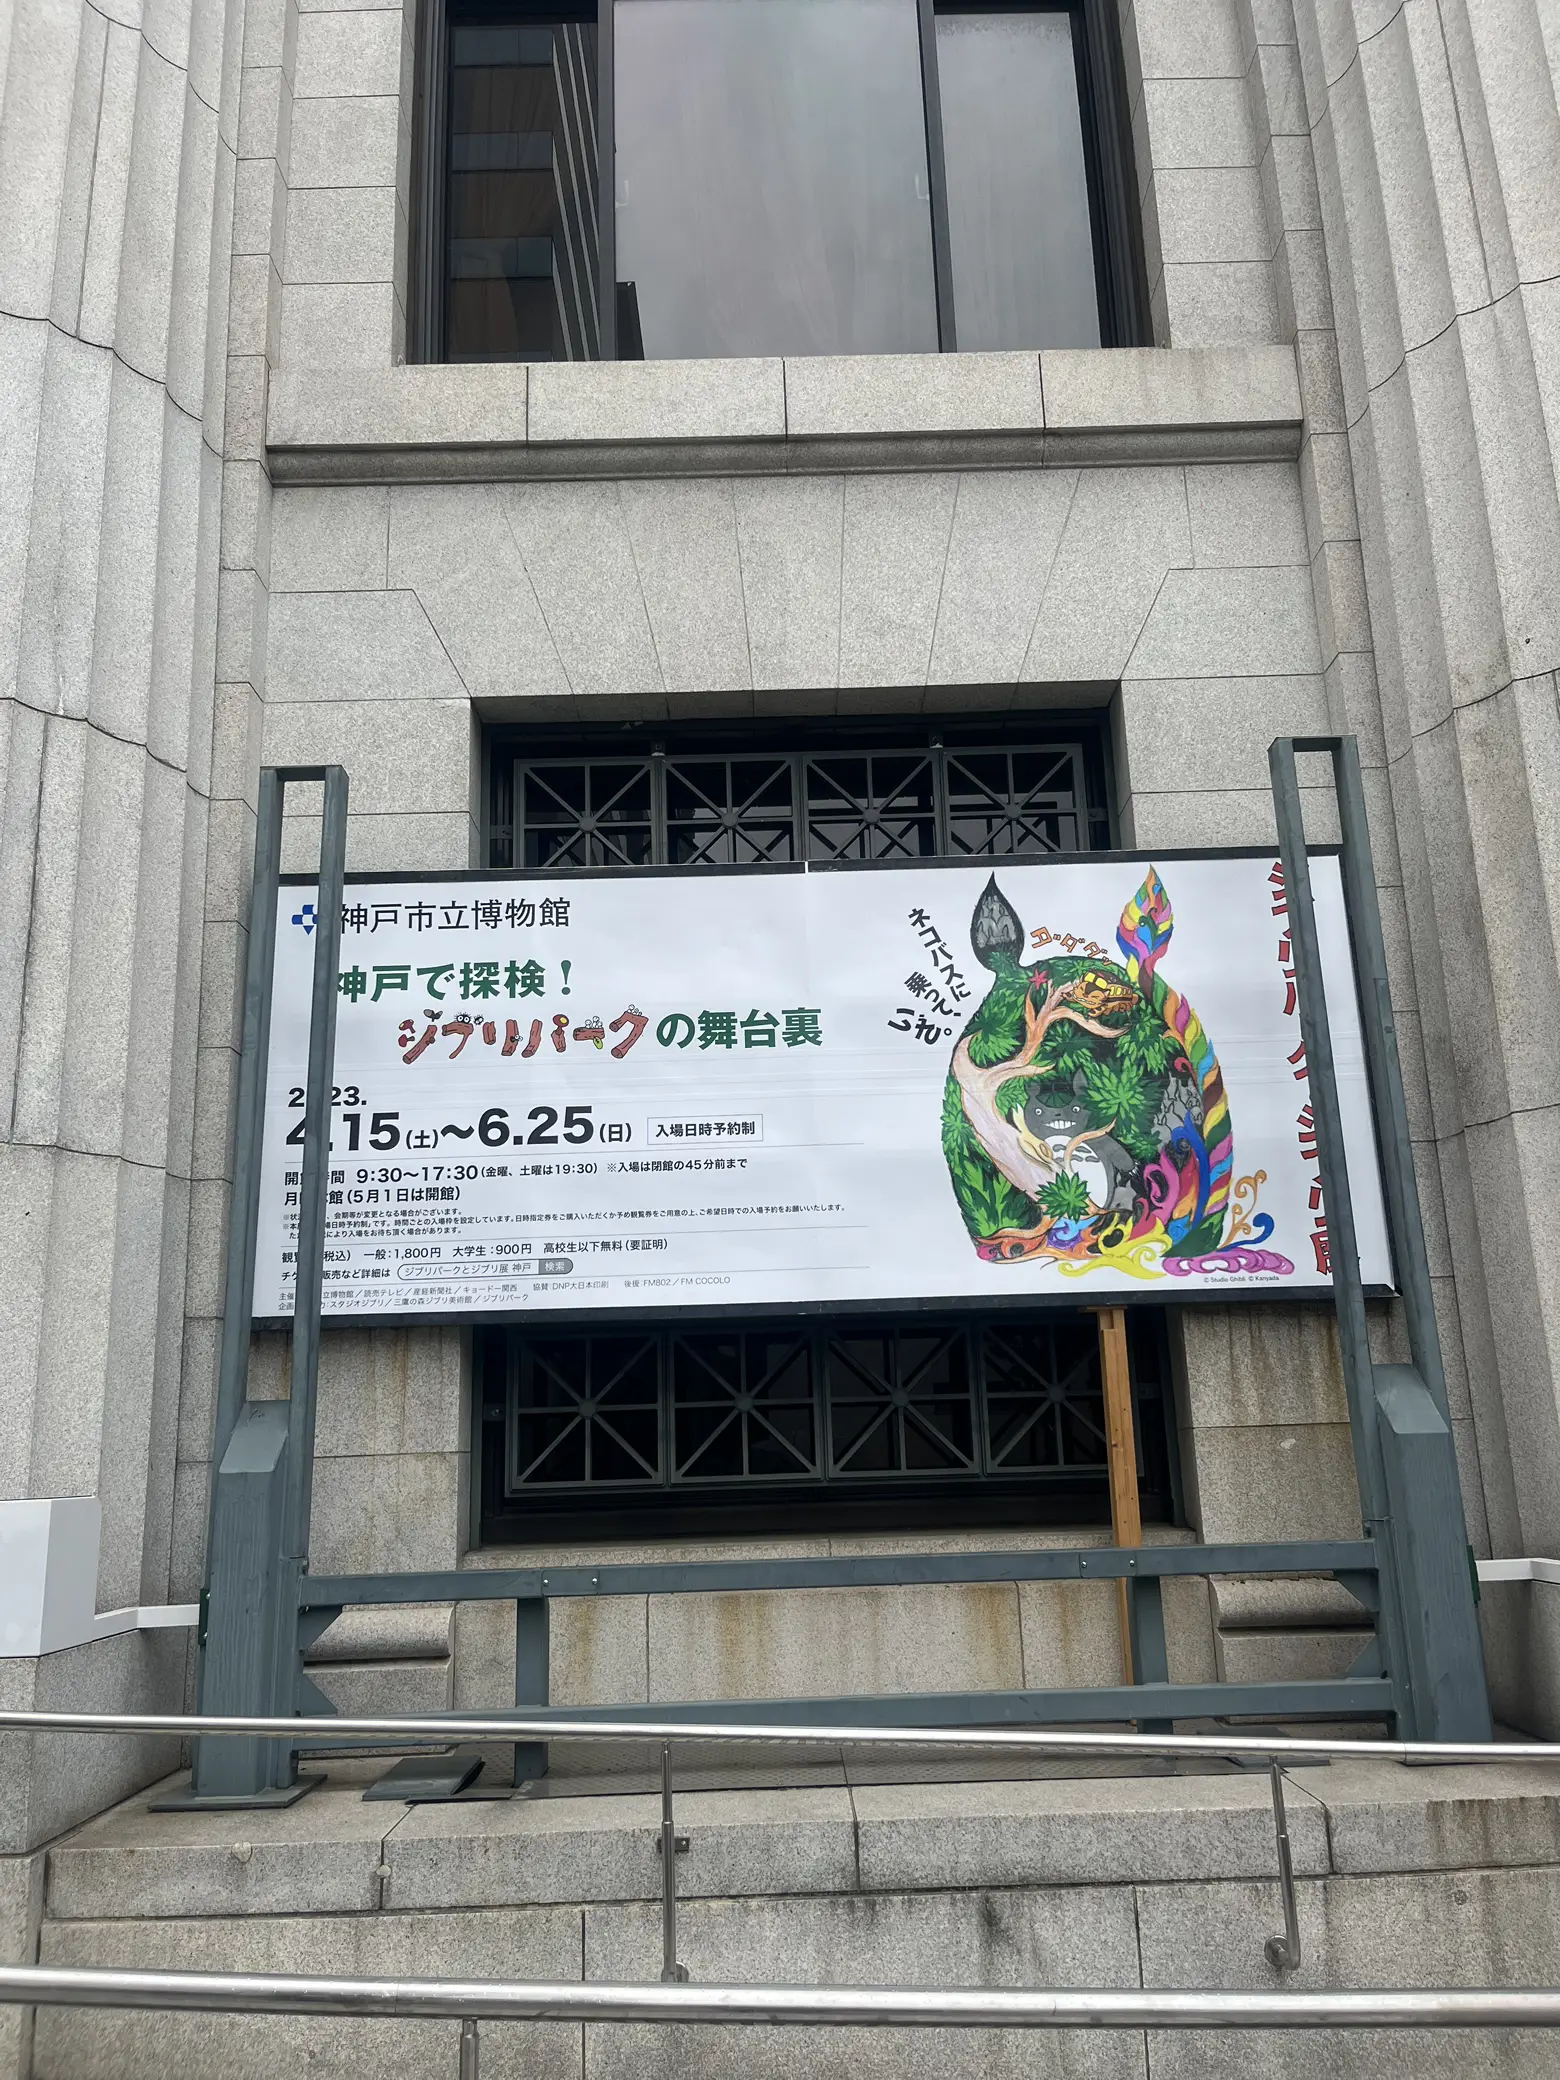 神戸市立博物館『ジブリパークとジブリ展』 | おばおばが投稿した